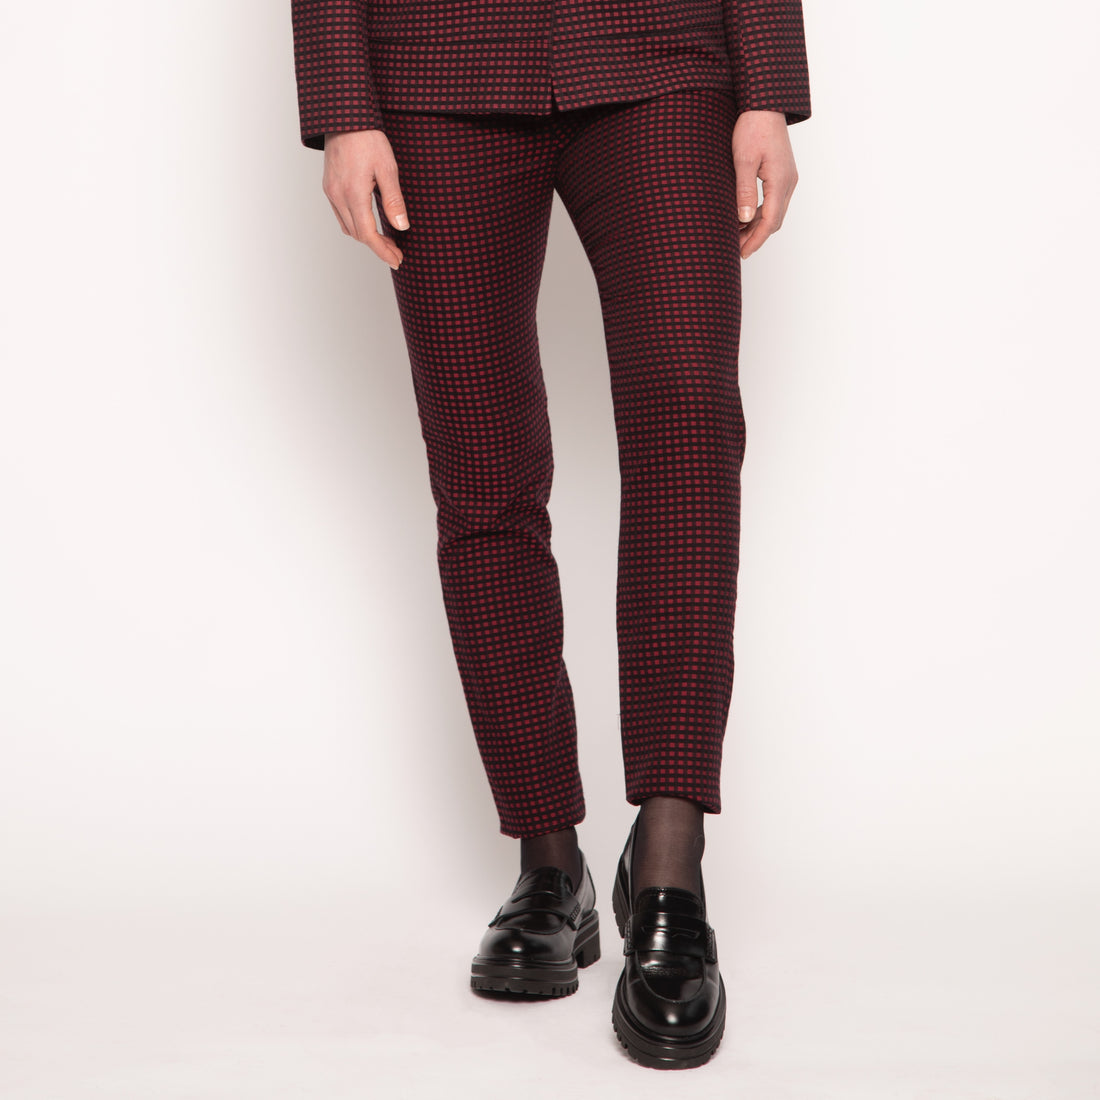 Pantalon tailleur slim - Coton - Petits carreaux rouges et noirs - NUYHENN